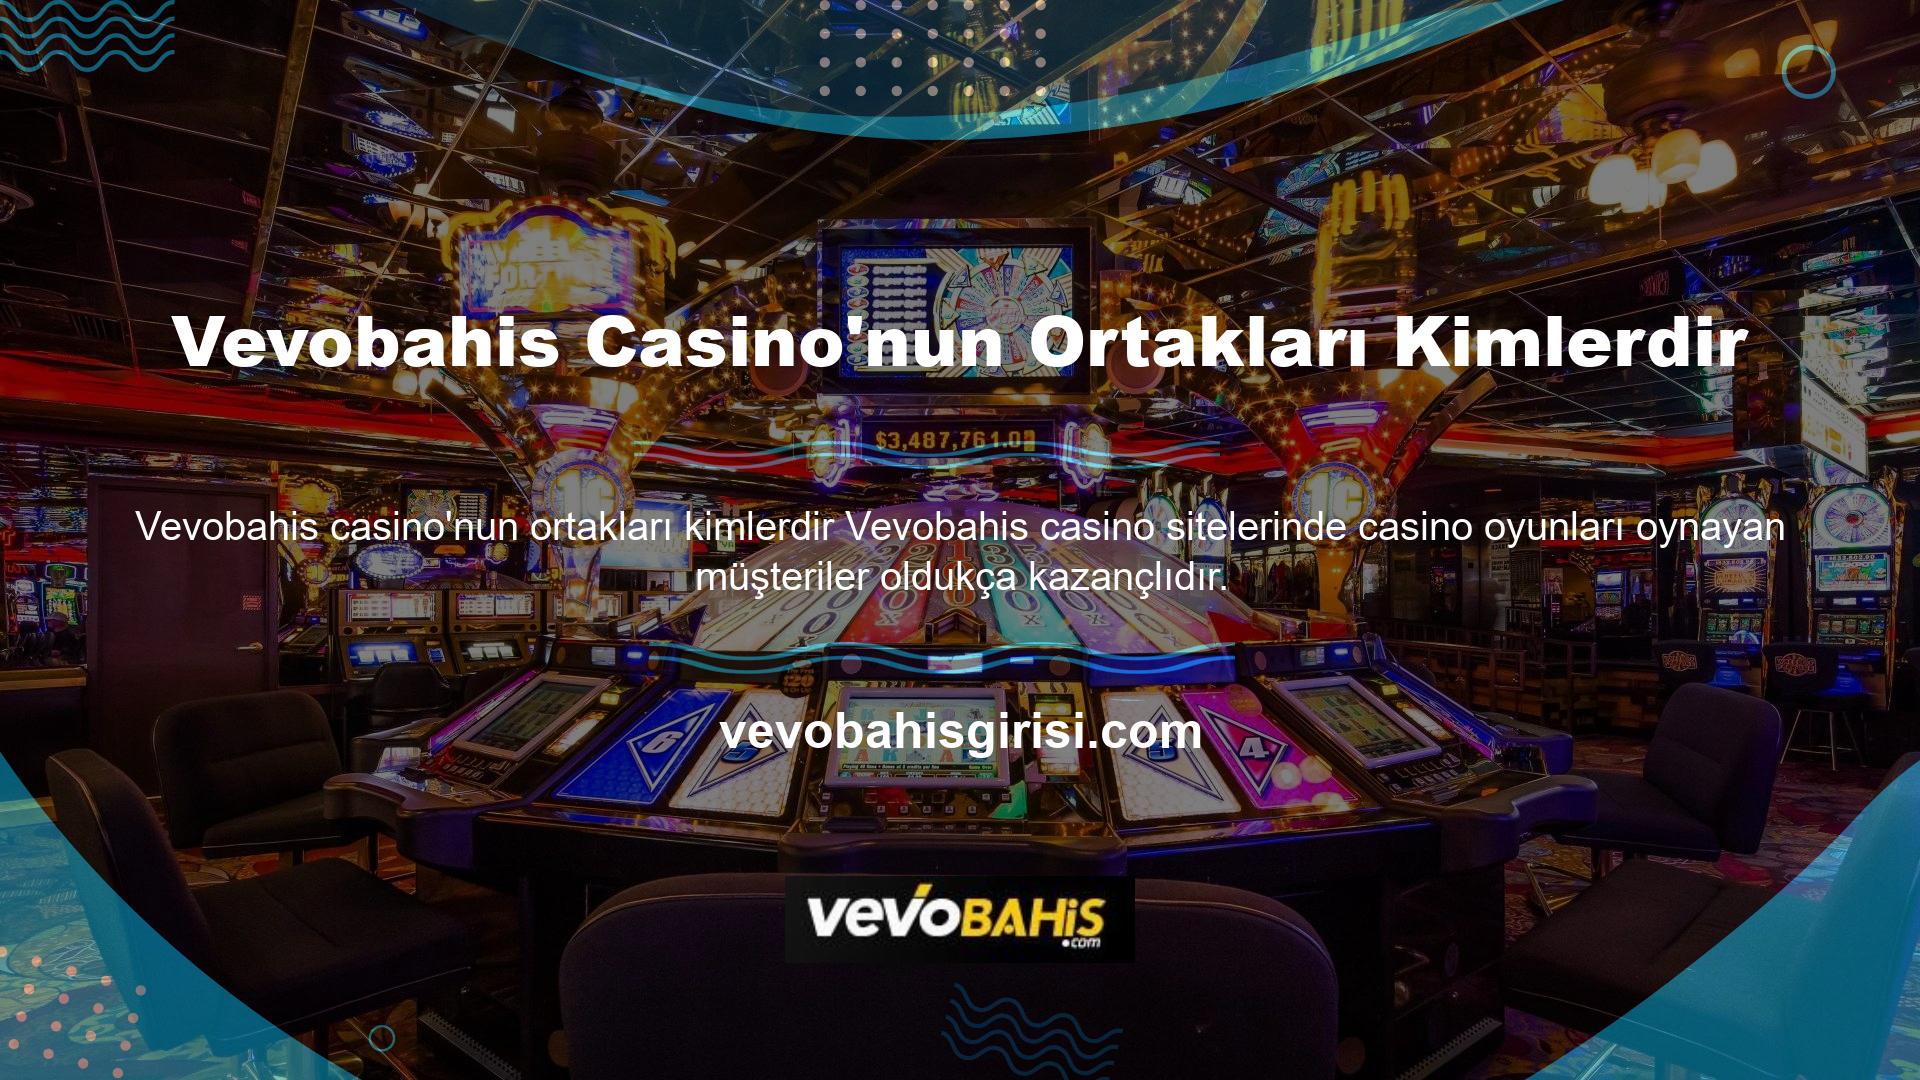 Diğer web sitelerinde dolandırıcılarla ve casino dolandırıcılarıyla karşılaştığınızda paranızın çöp olduğunu düşünebilirsiniz